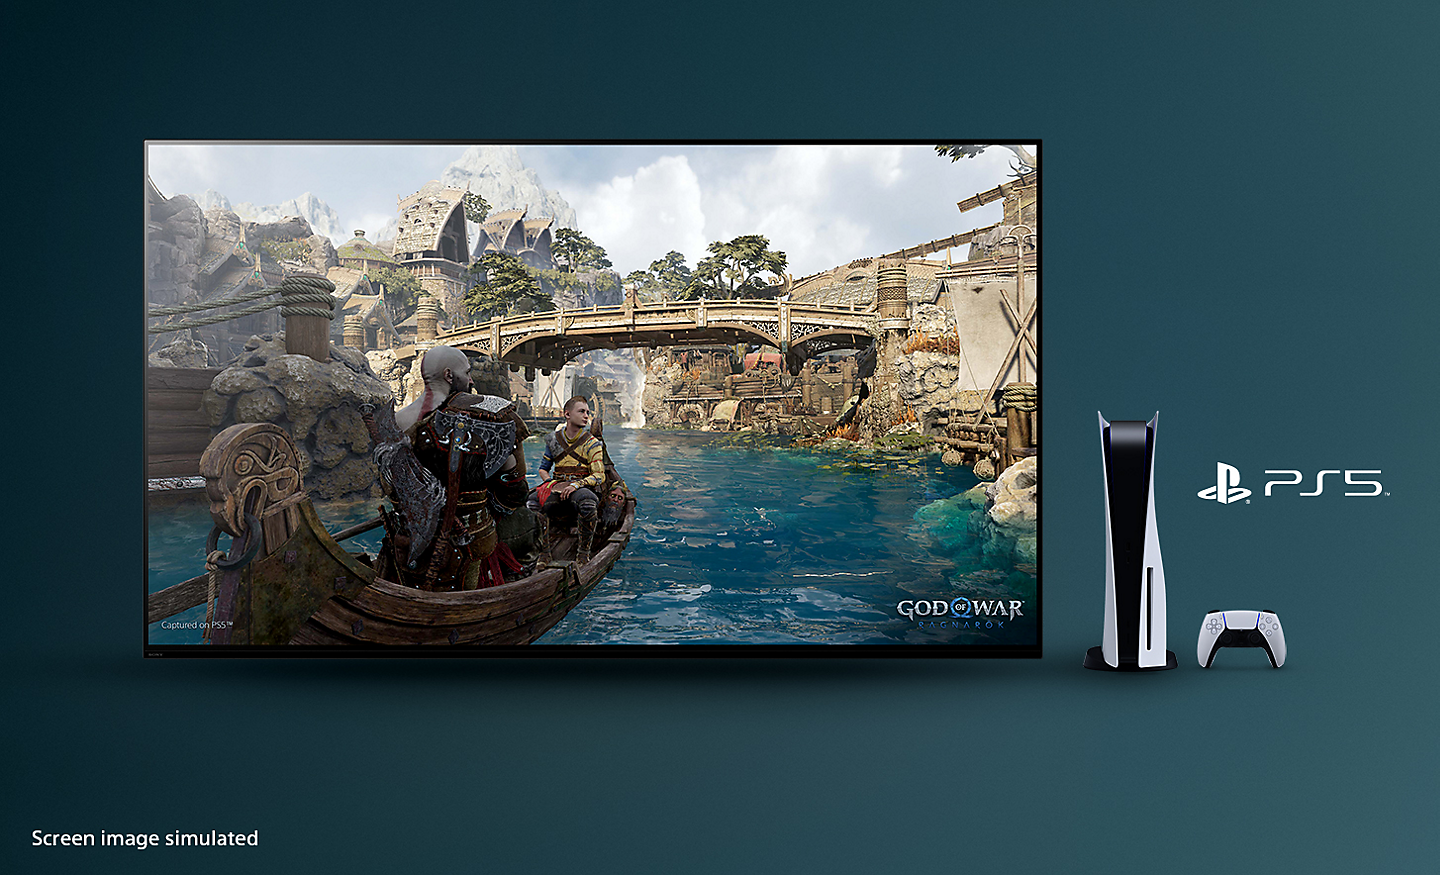 تلفزيون BRAVIA مع لقطة شاشة للعبة God of War: Ragnarok تعرض قاربًا في نهر وجسرًا في الخلفية مع جهاز PS5™‎ ووحدة تحكم خاصة به وشعار PS5™‎ على يمين التلفزيون